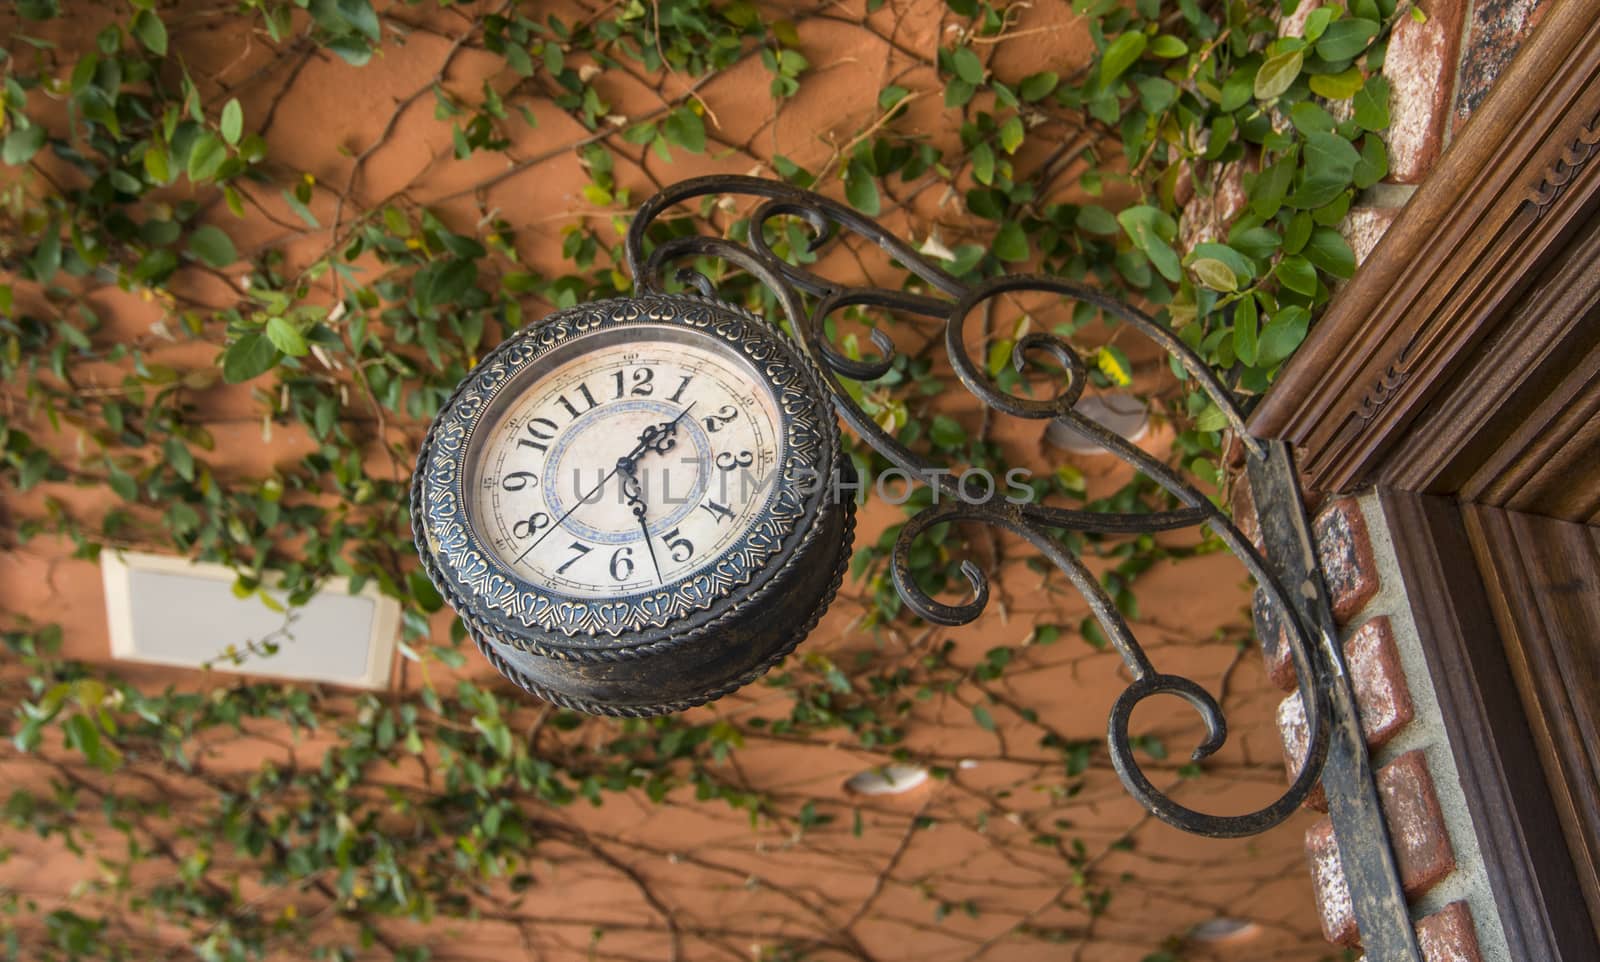 Hanging antique clock